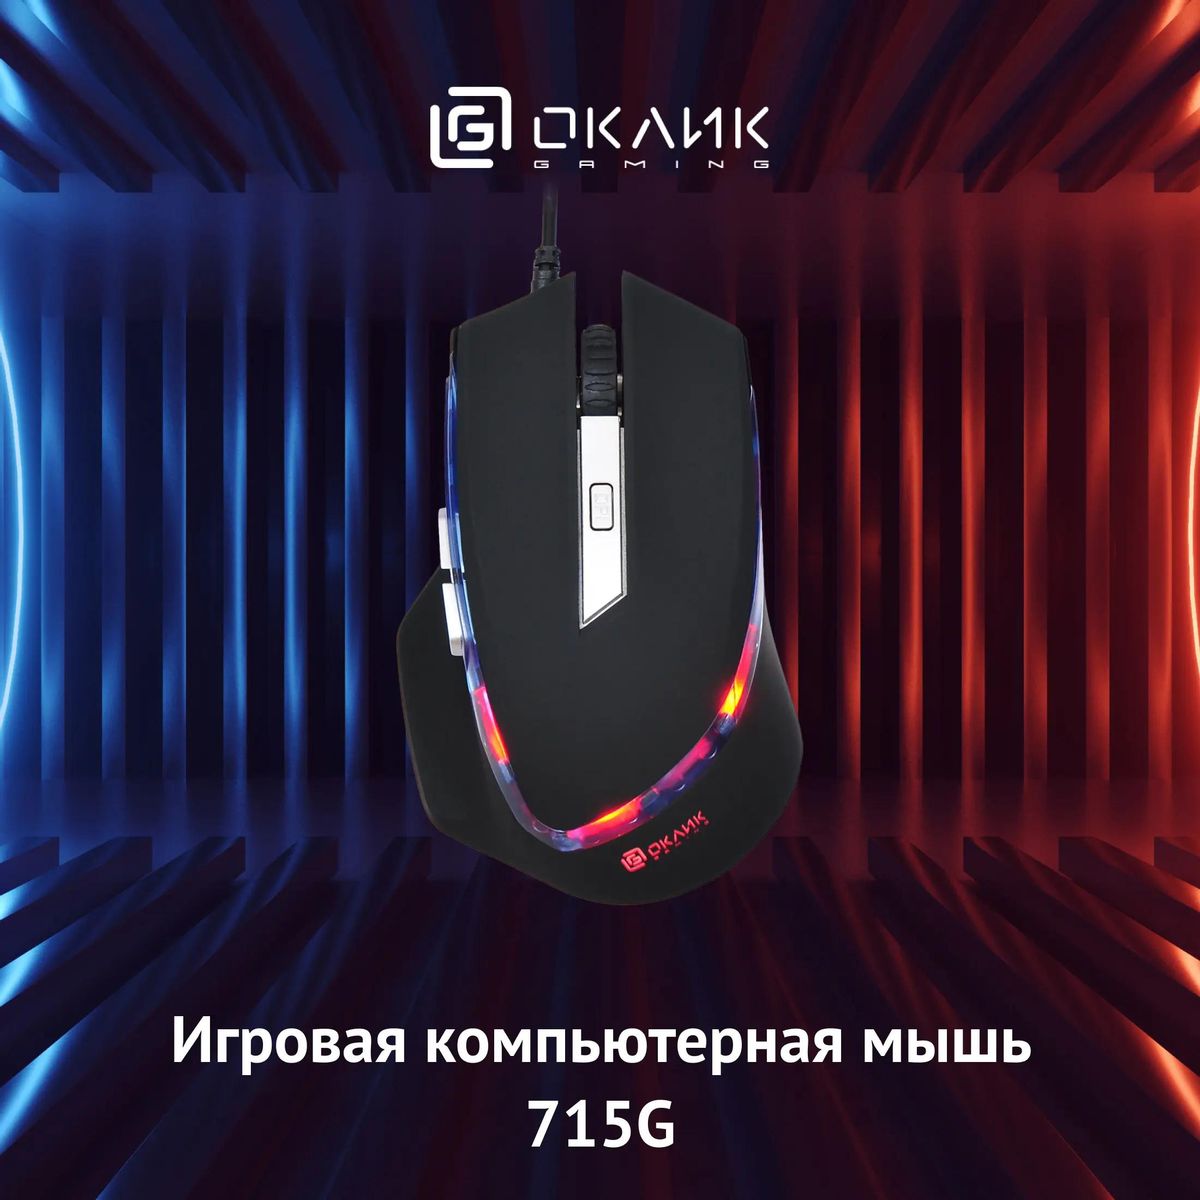 Мышь Oklick 715G, проводная, USB, черный и серебристый